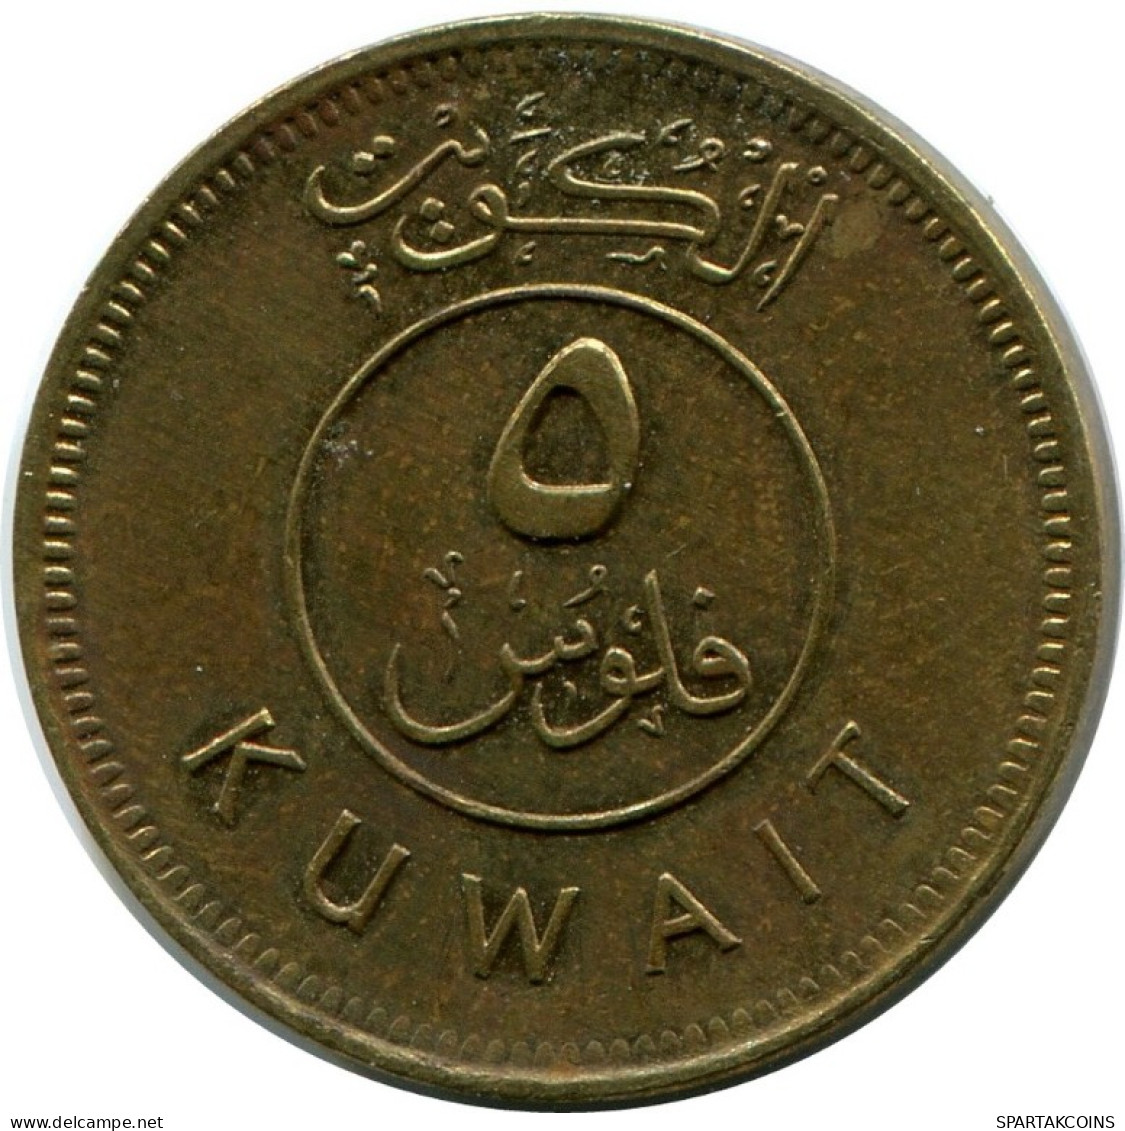 5 FILS 2006 KUWAIT Islamisch Münze #AK321.D.A - Koweït